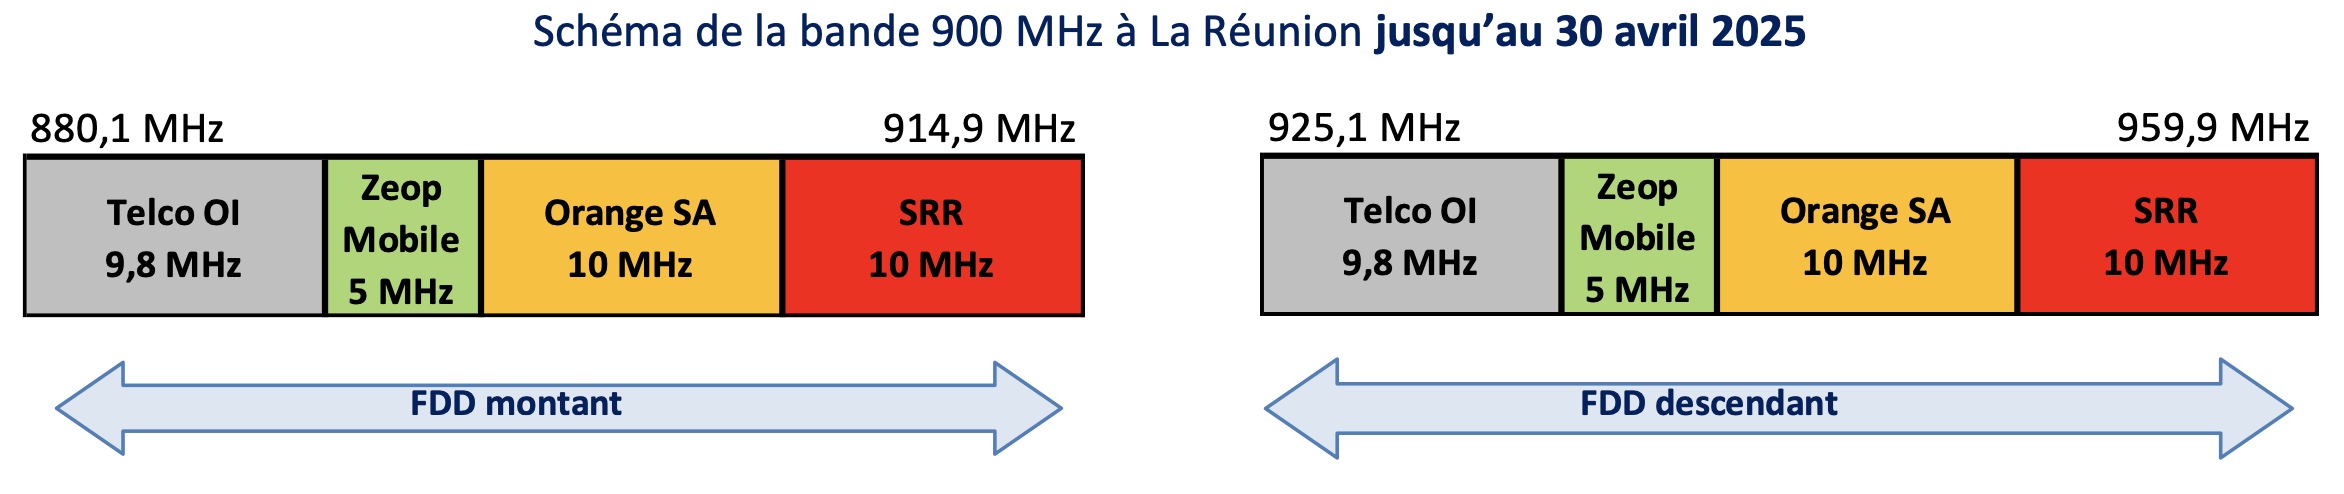 L’Arcep délivre aux lauréats les autorisations d’utilisation de fréquences dans la bande 900 MHz à La Réunion